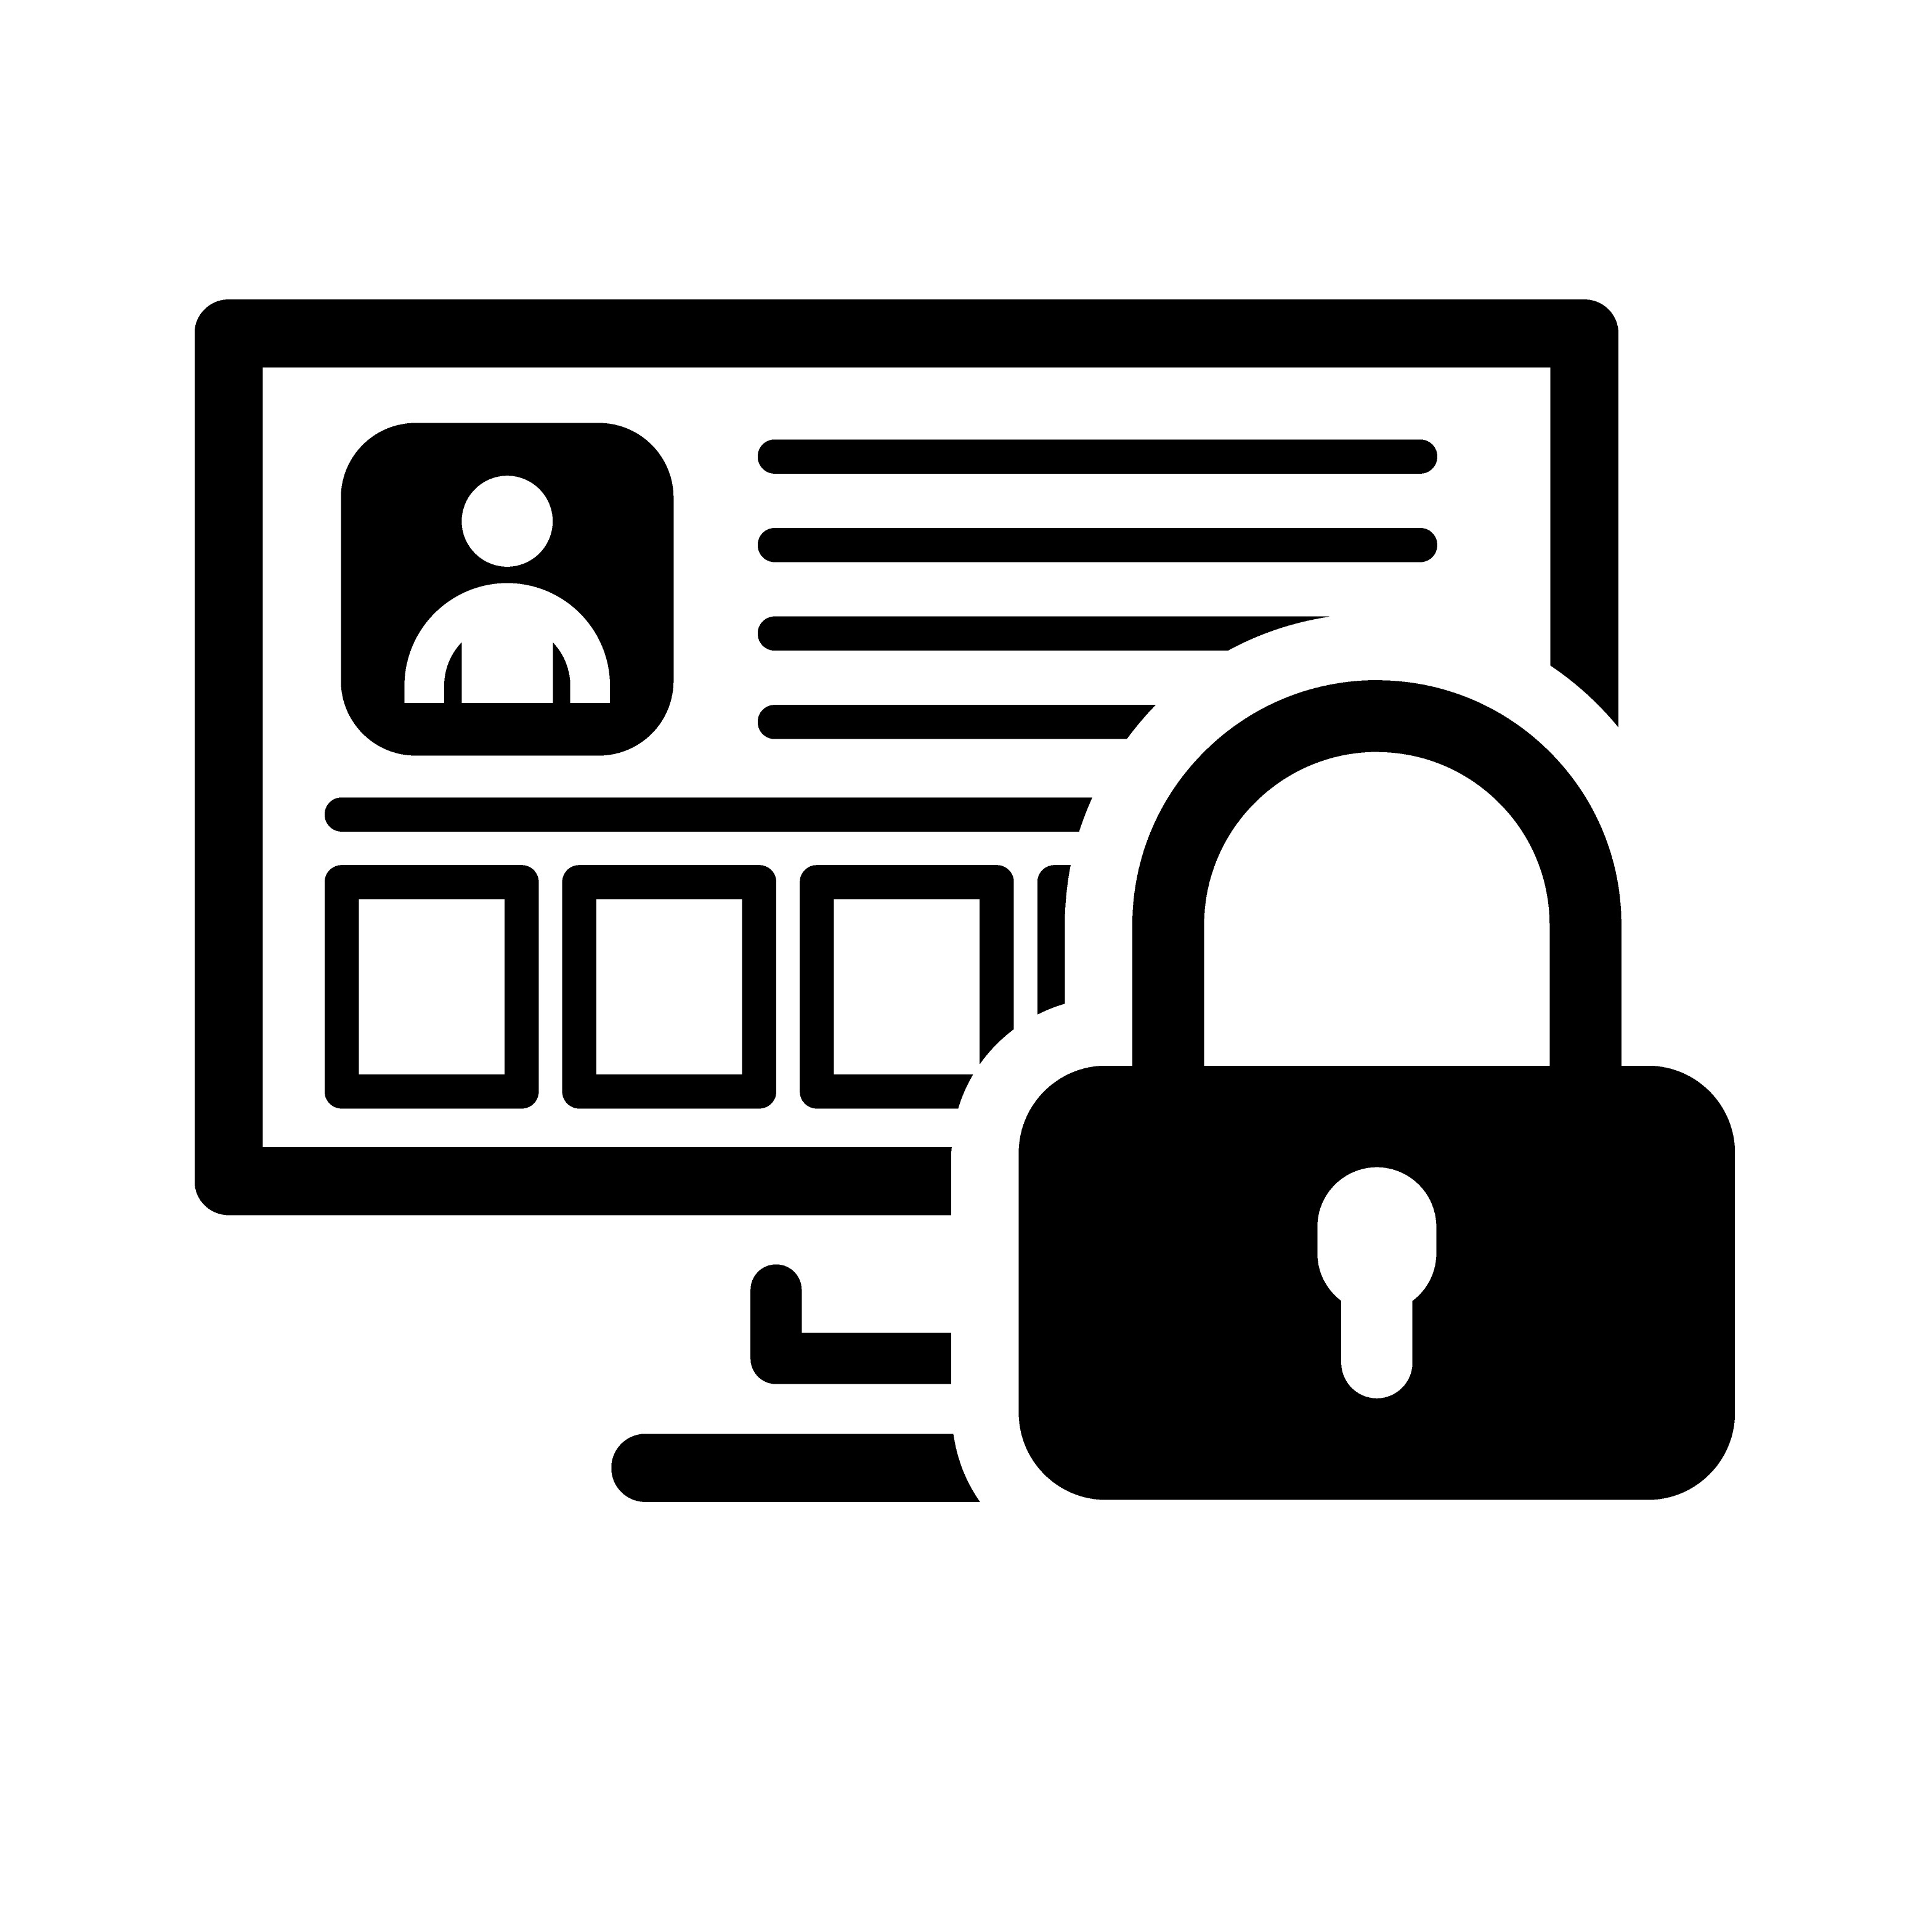 Slika prikazuje internetsku ikonu za zaštitu podataka